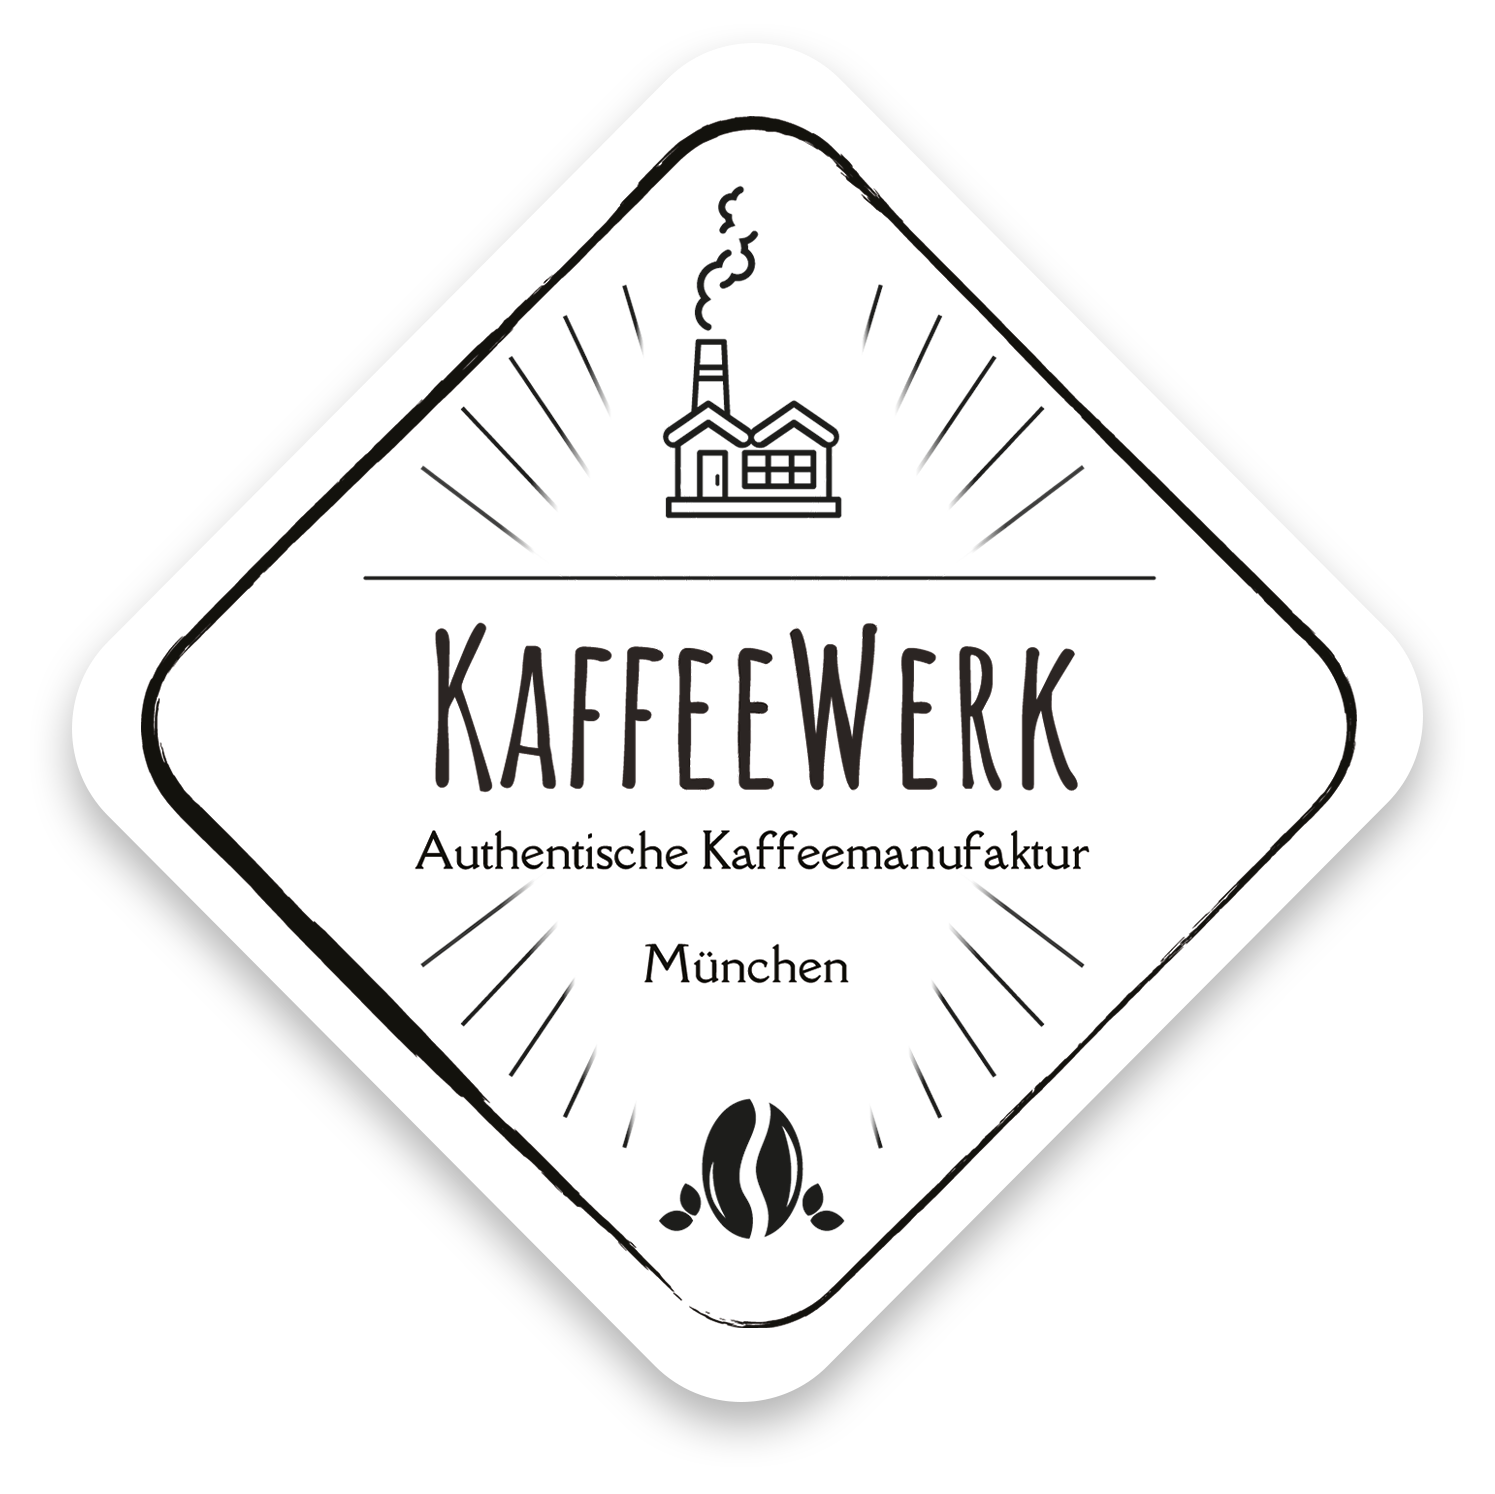 KaffeeWerk München